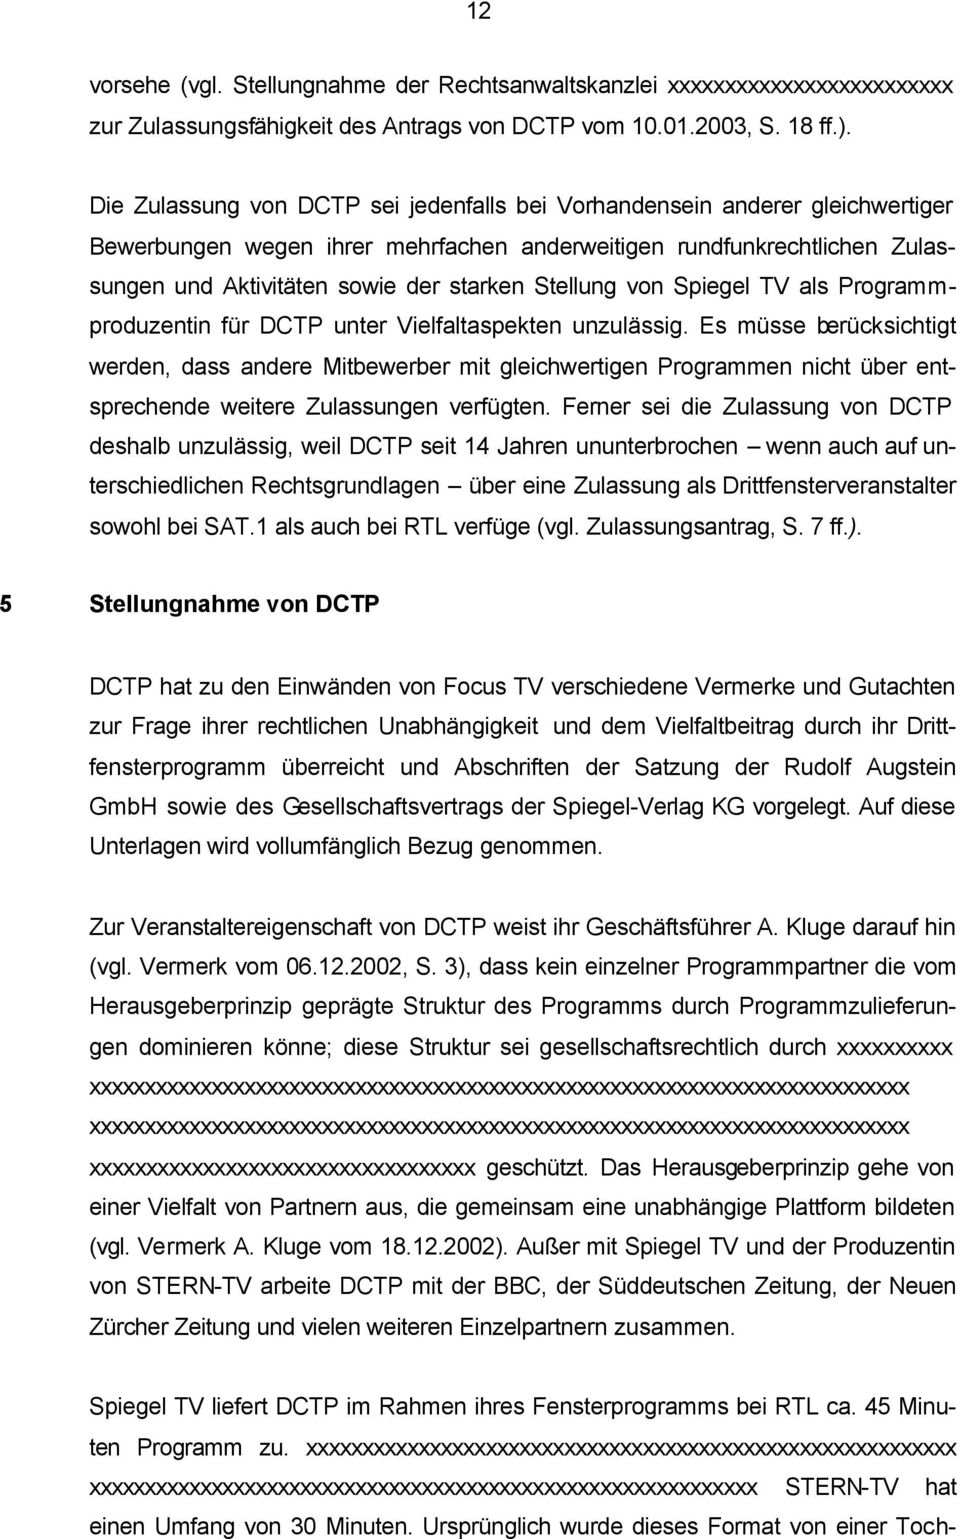 Stellung von Spiegel TV als Programmproduzentin für DCTP unter Vielfaltaspekten unzulässig.